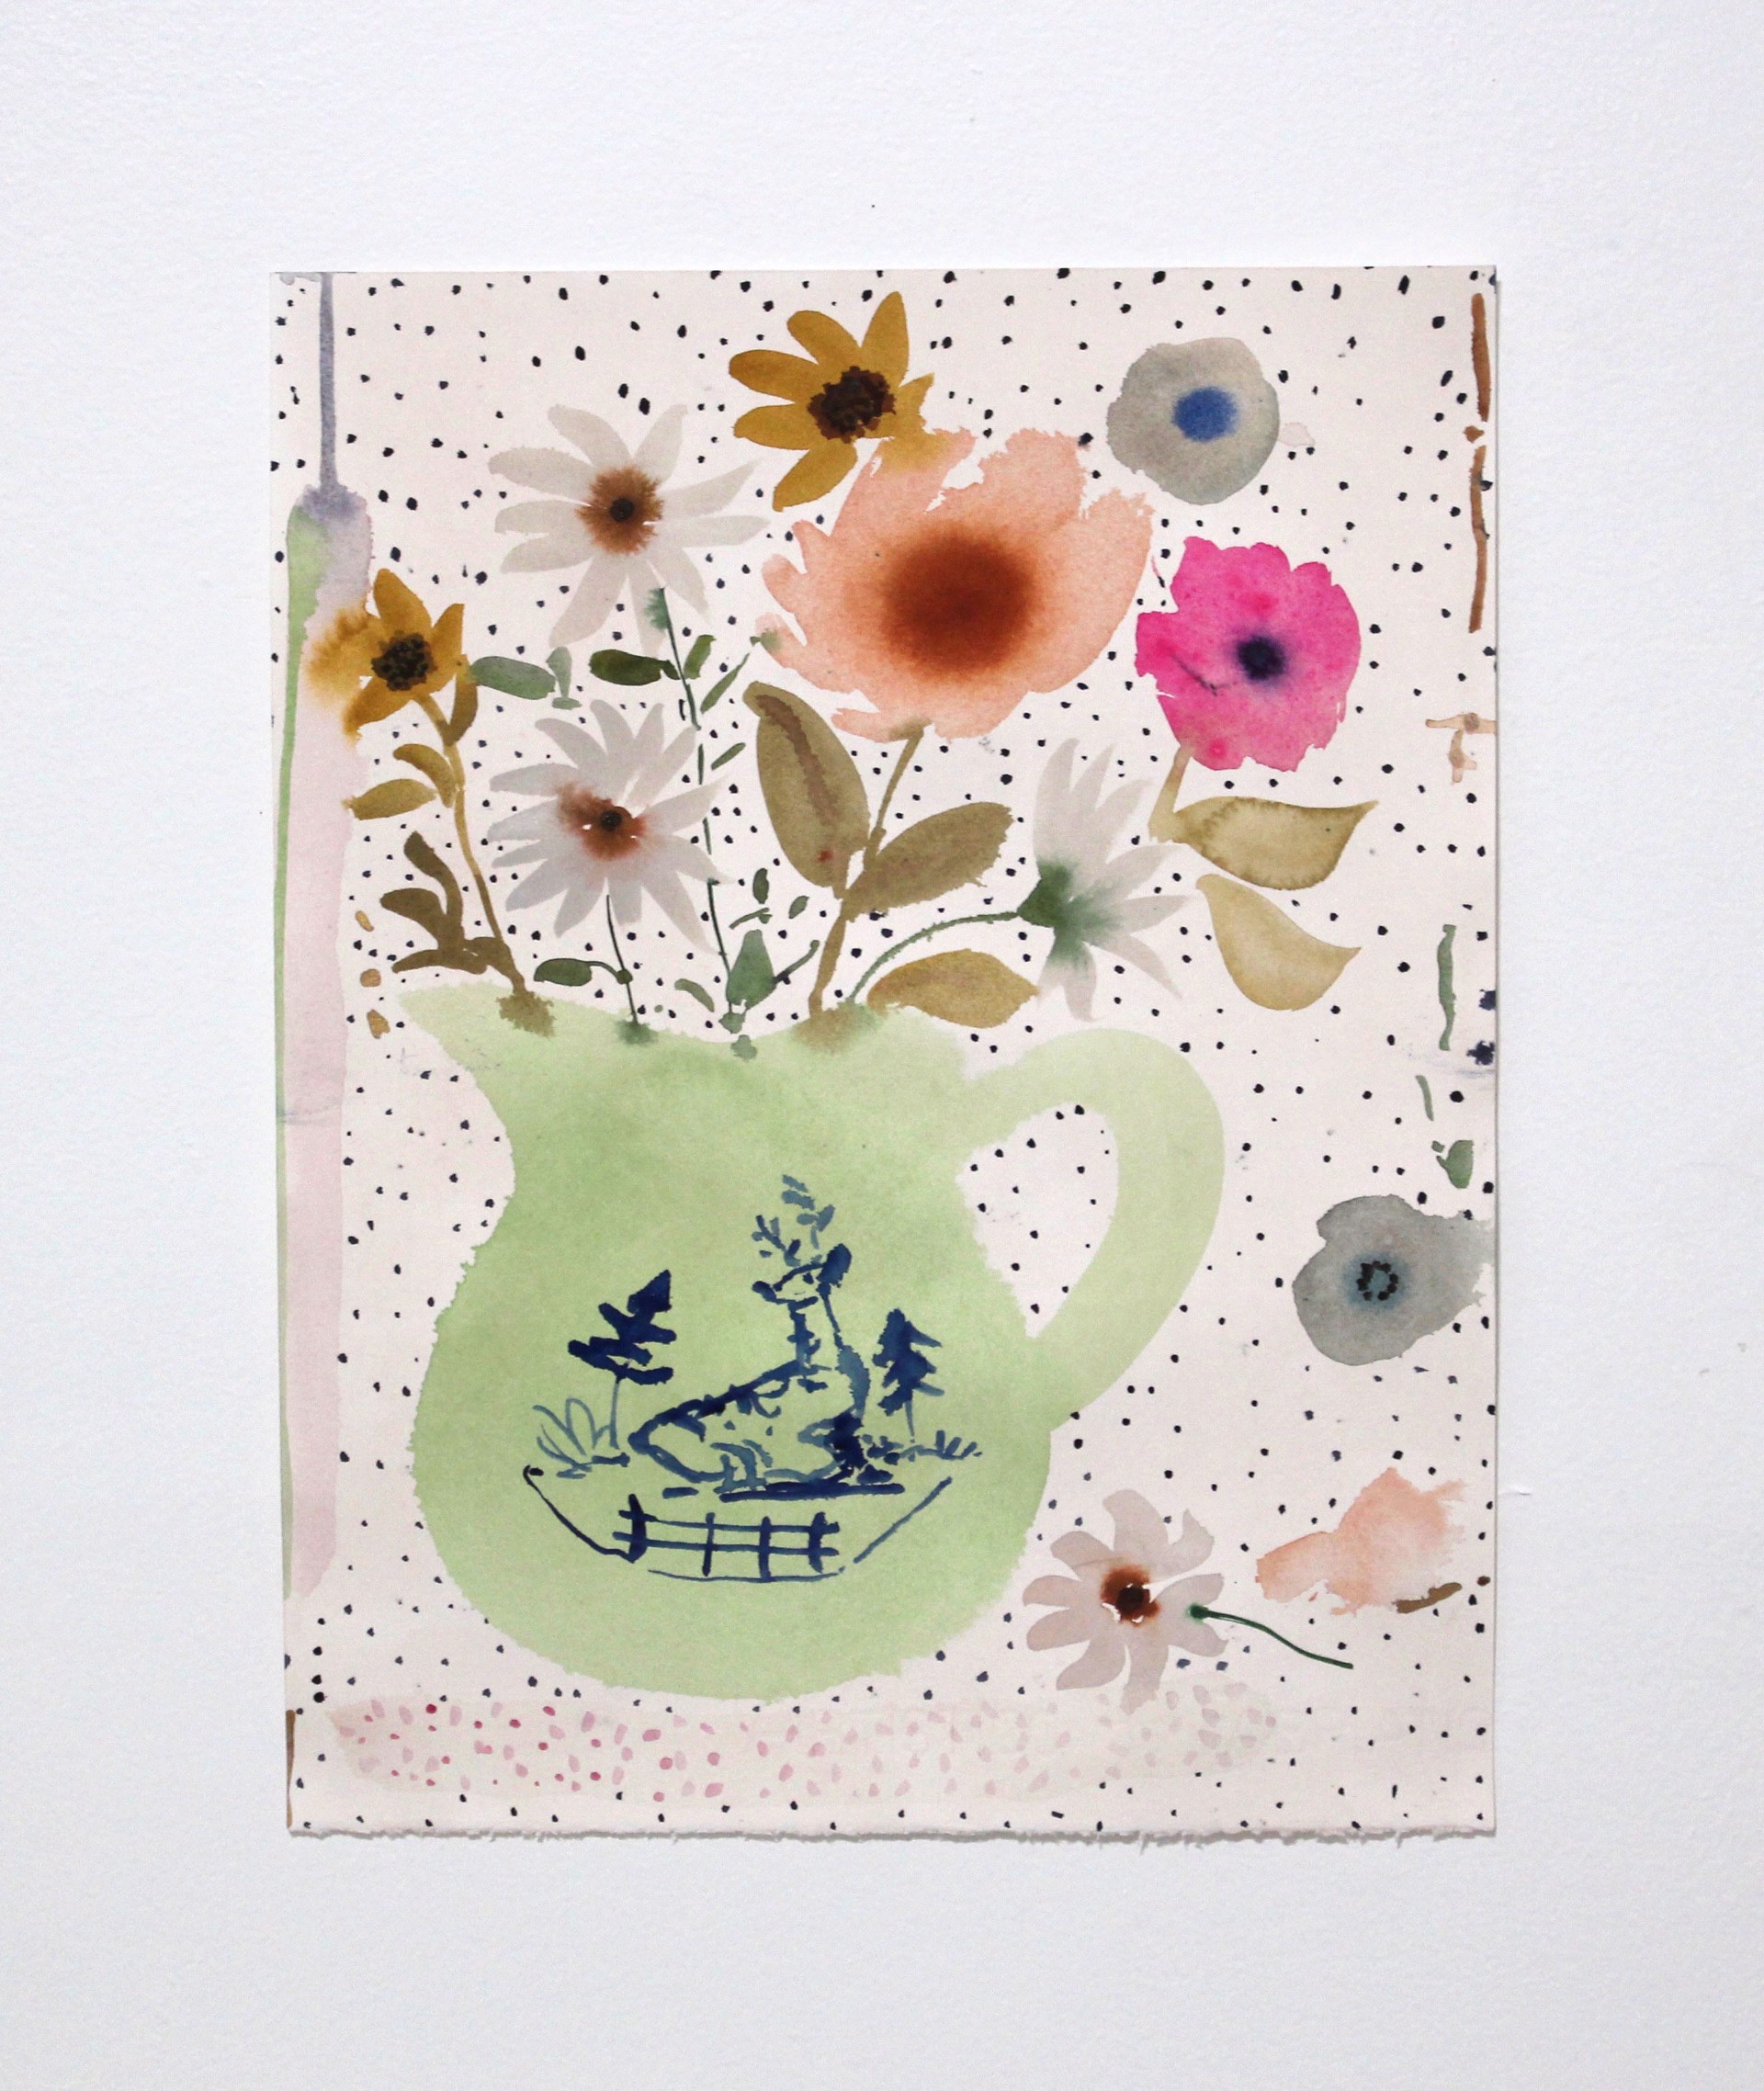 Wildflowers in Deer Vase by Kayla Plosz Antiel